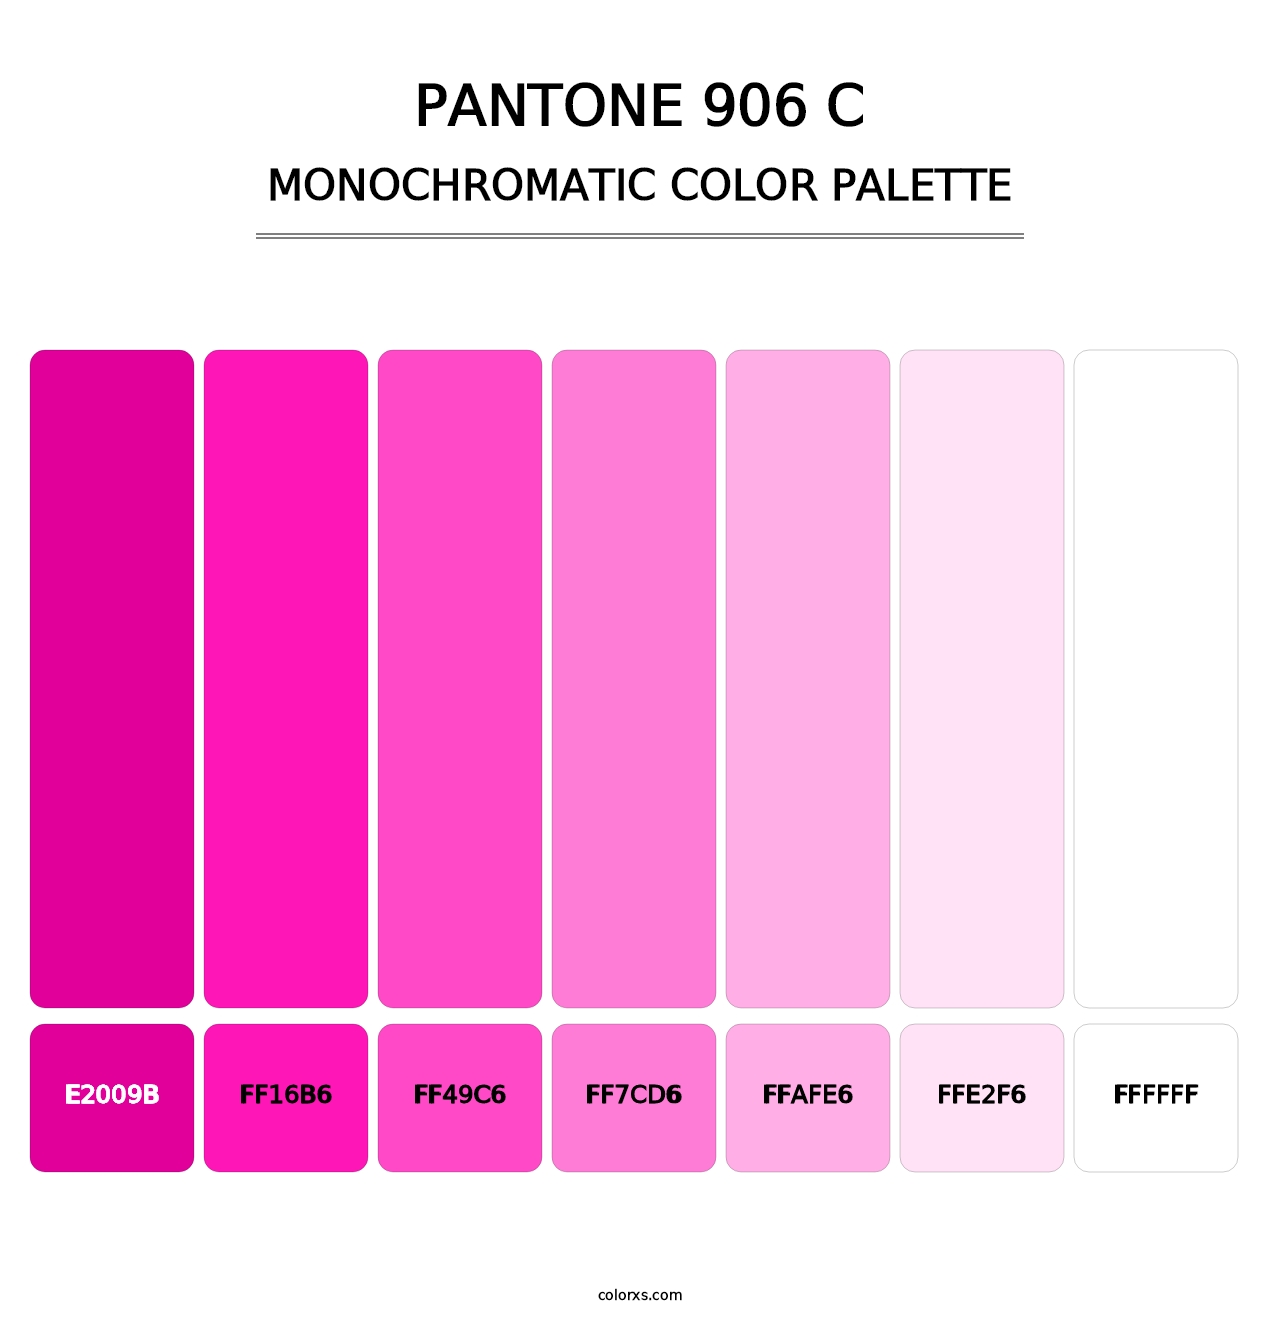 PANTONE 906 C - Monochromatic Color Palette